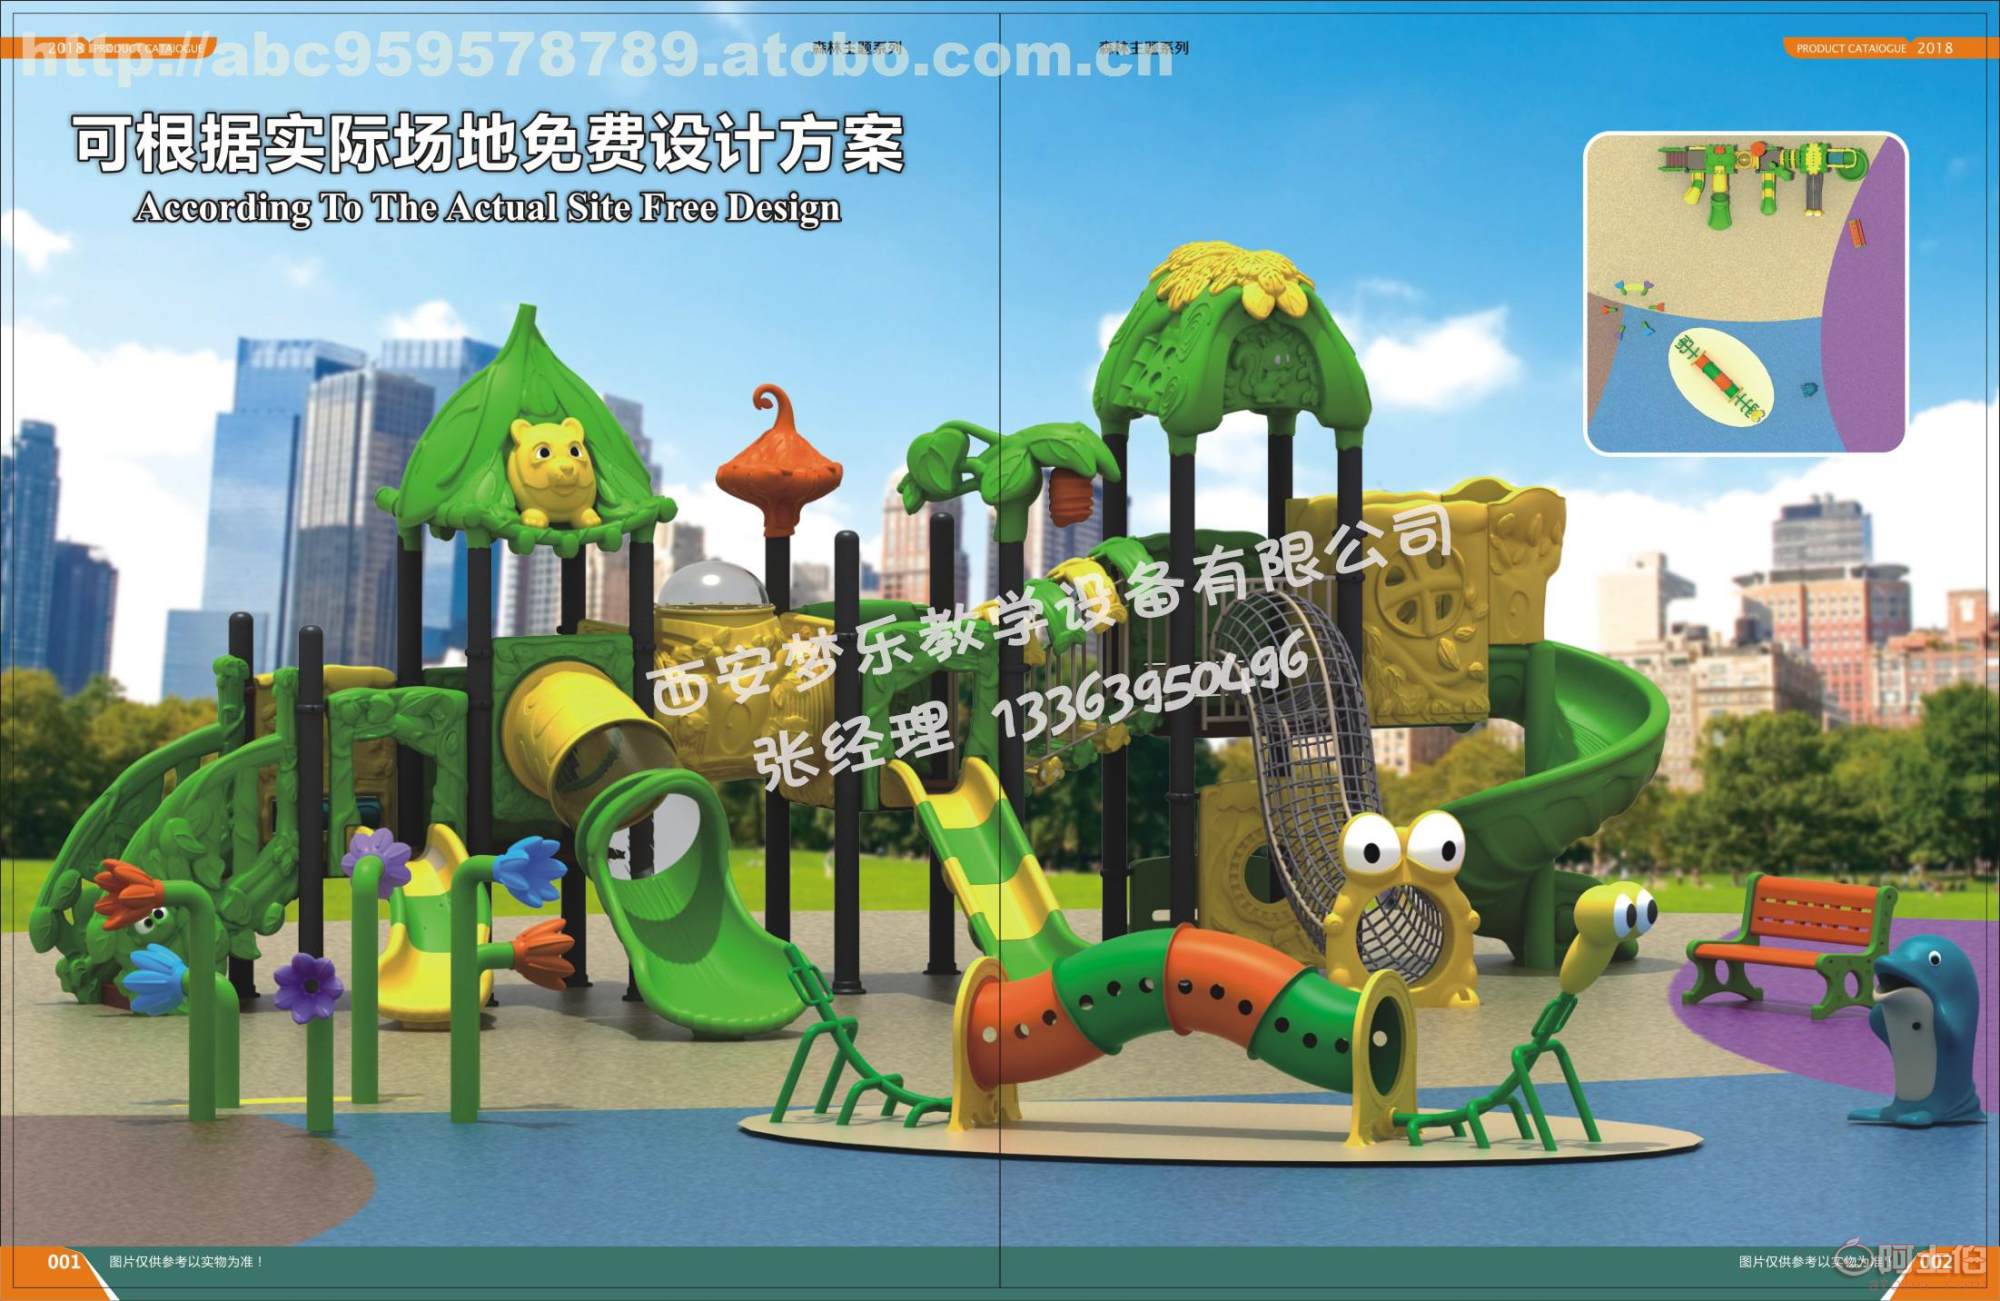 西安幼儿园教玩具西安幼儿园游乐设施西安幼儿园淘气堡西安幼儿园桌椅